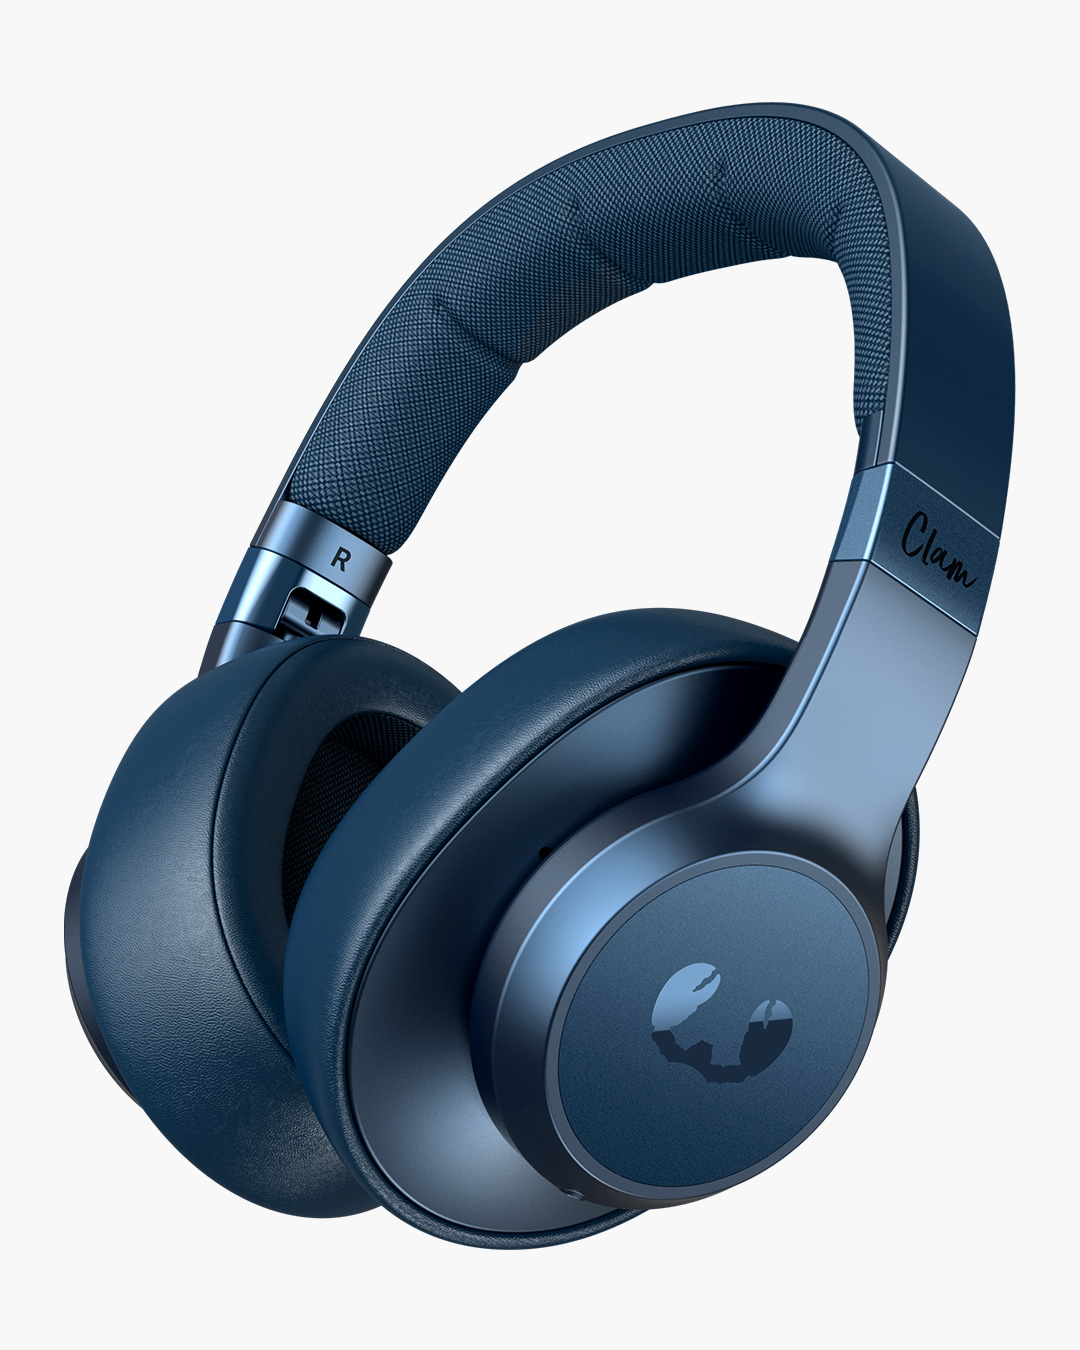 Fresh 'n Rebel - Clam - Wireless over-ear headphones - Steel Blue